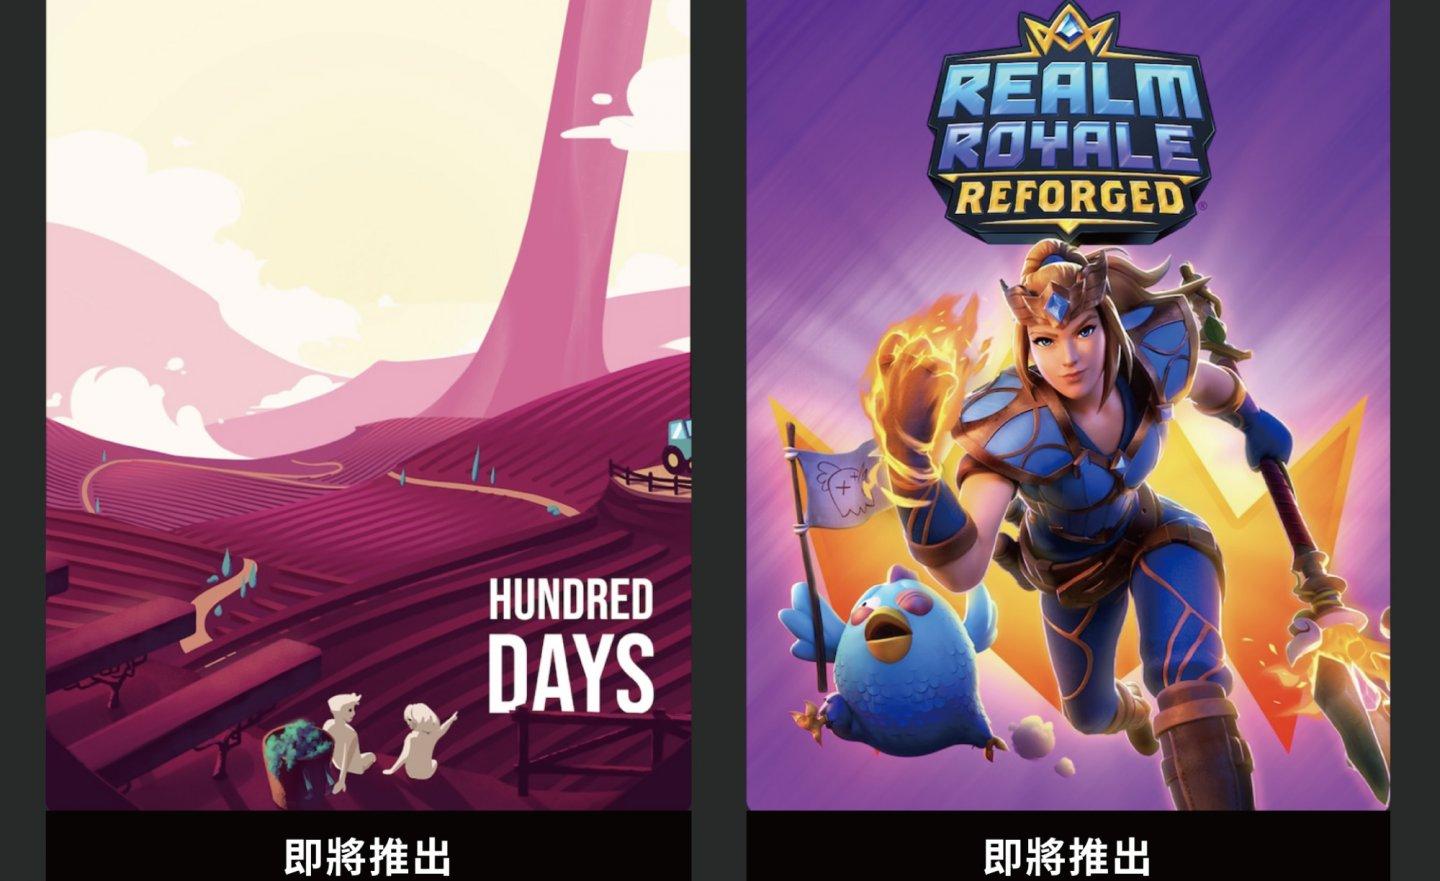 【限時免費】《Hundred Days》釀酒模擬遊戲、《Realm Royale Reforged》Epic 啟動組合包放送中，快搶在 2022 年 9 月 15 日 23:00 前領取